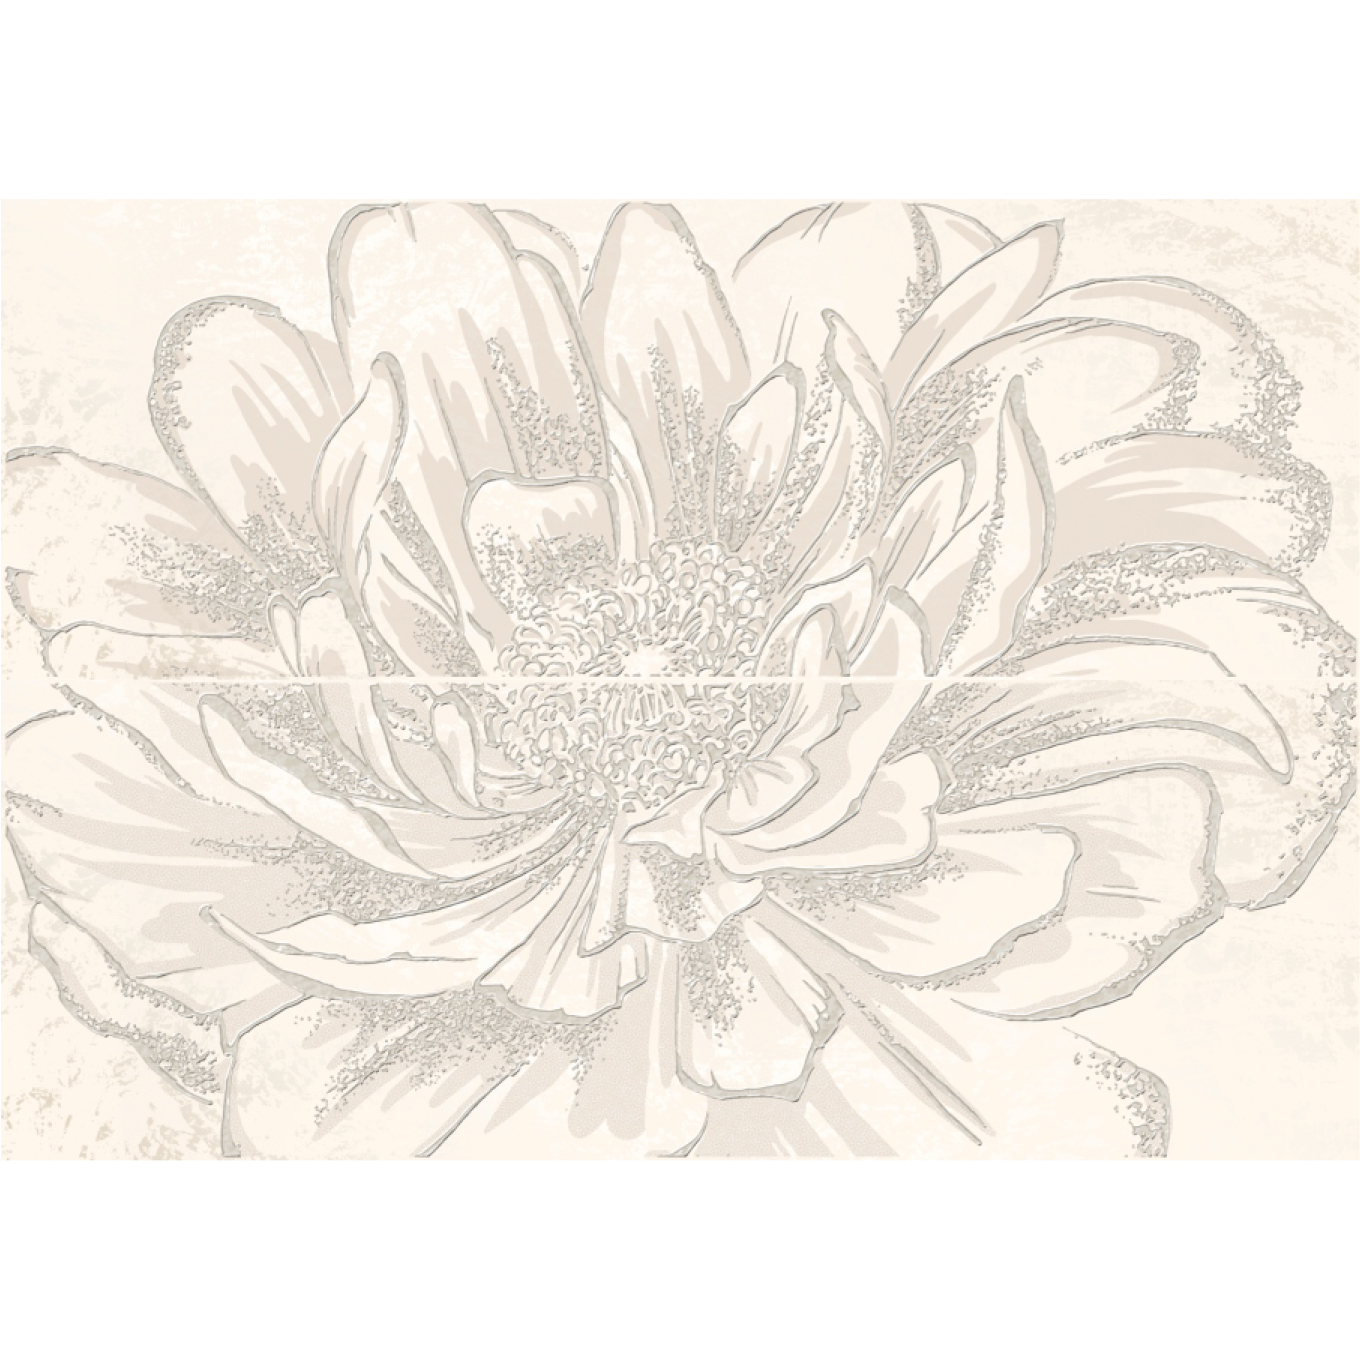 Панно Kerlife Strato Anemone Crema 50,2x70,9 см панно kerlife verona natura crema 63x126 см